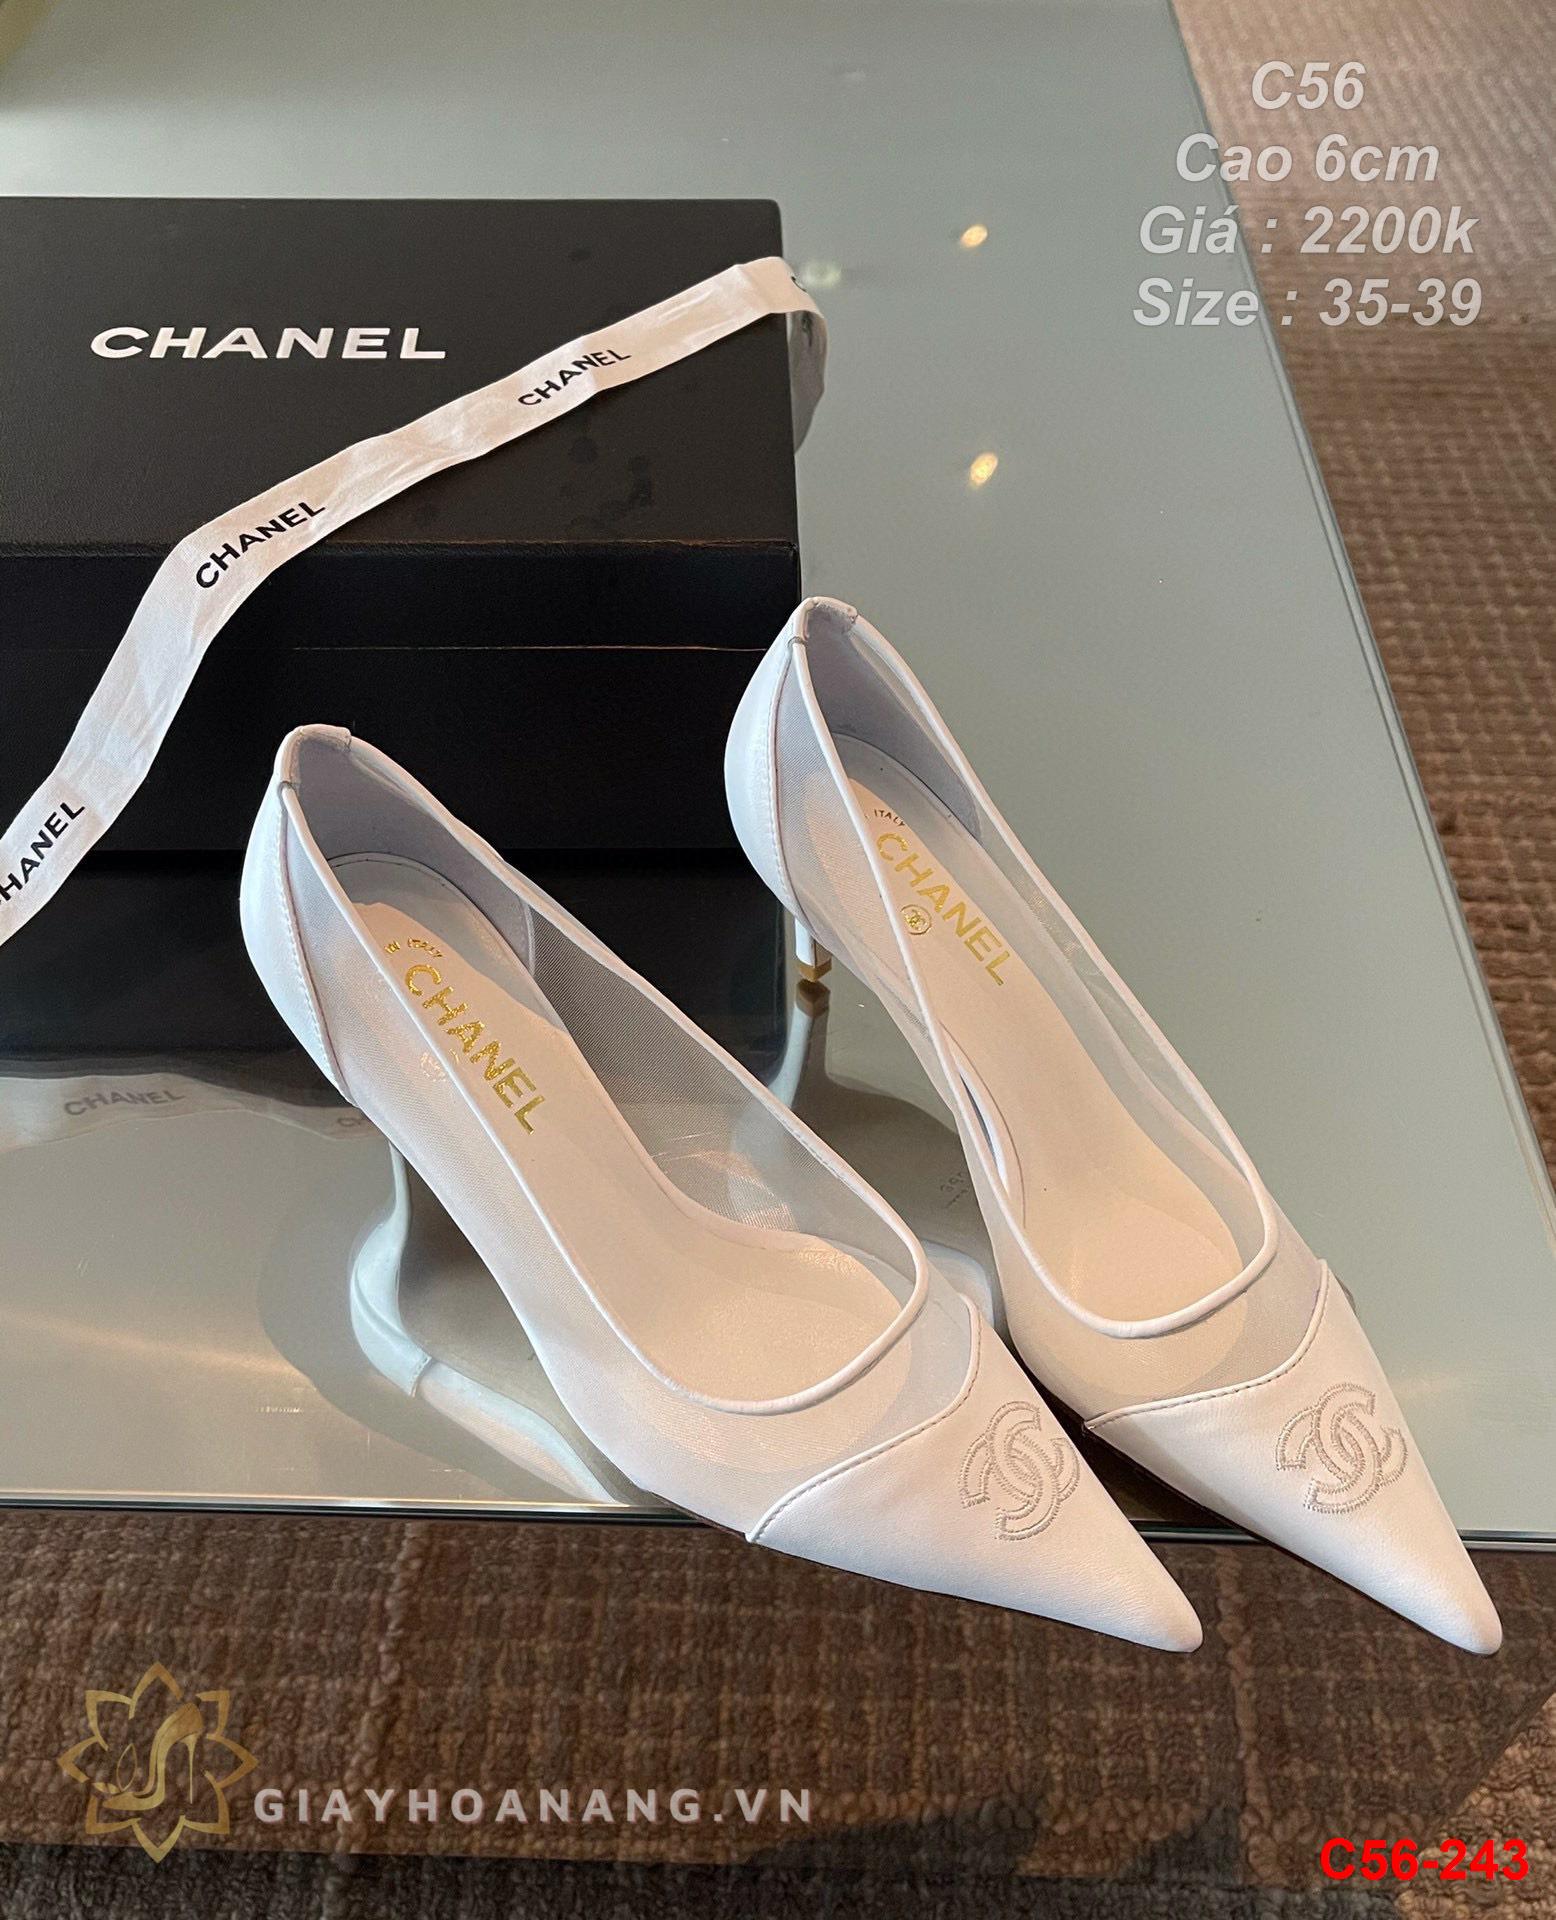 C56-243 Chanel giày cao 6cm siêu cấp